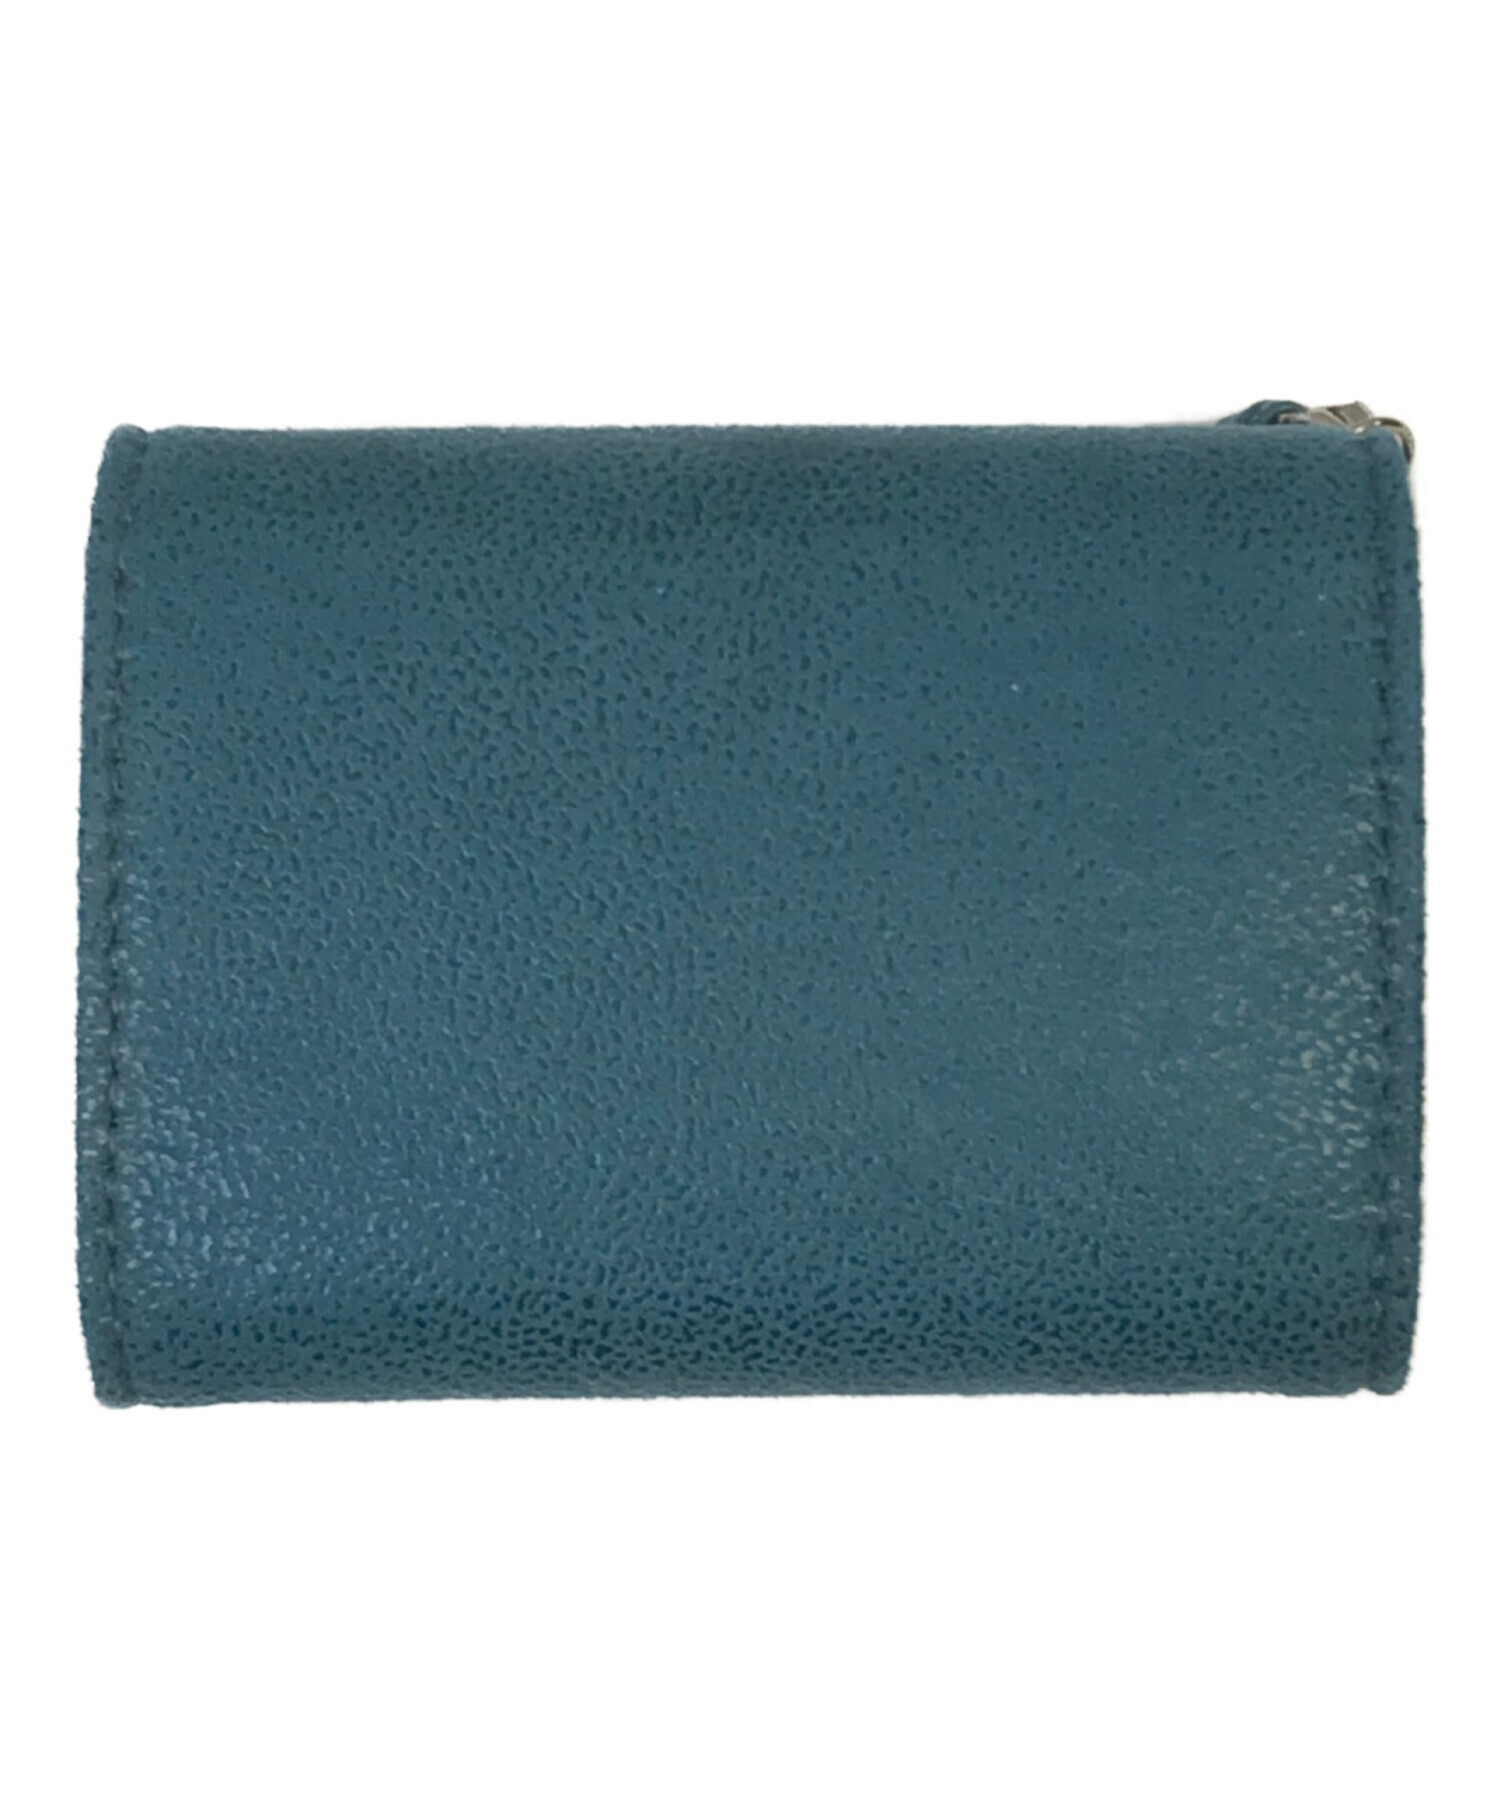 ステラマッカートニー 三つ折り財布 ブルーファッション小物 - 財布